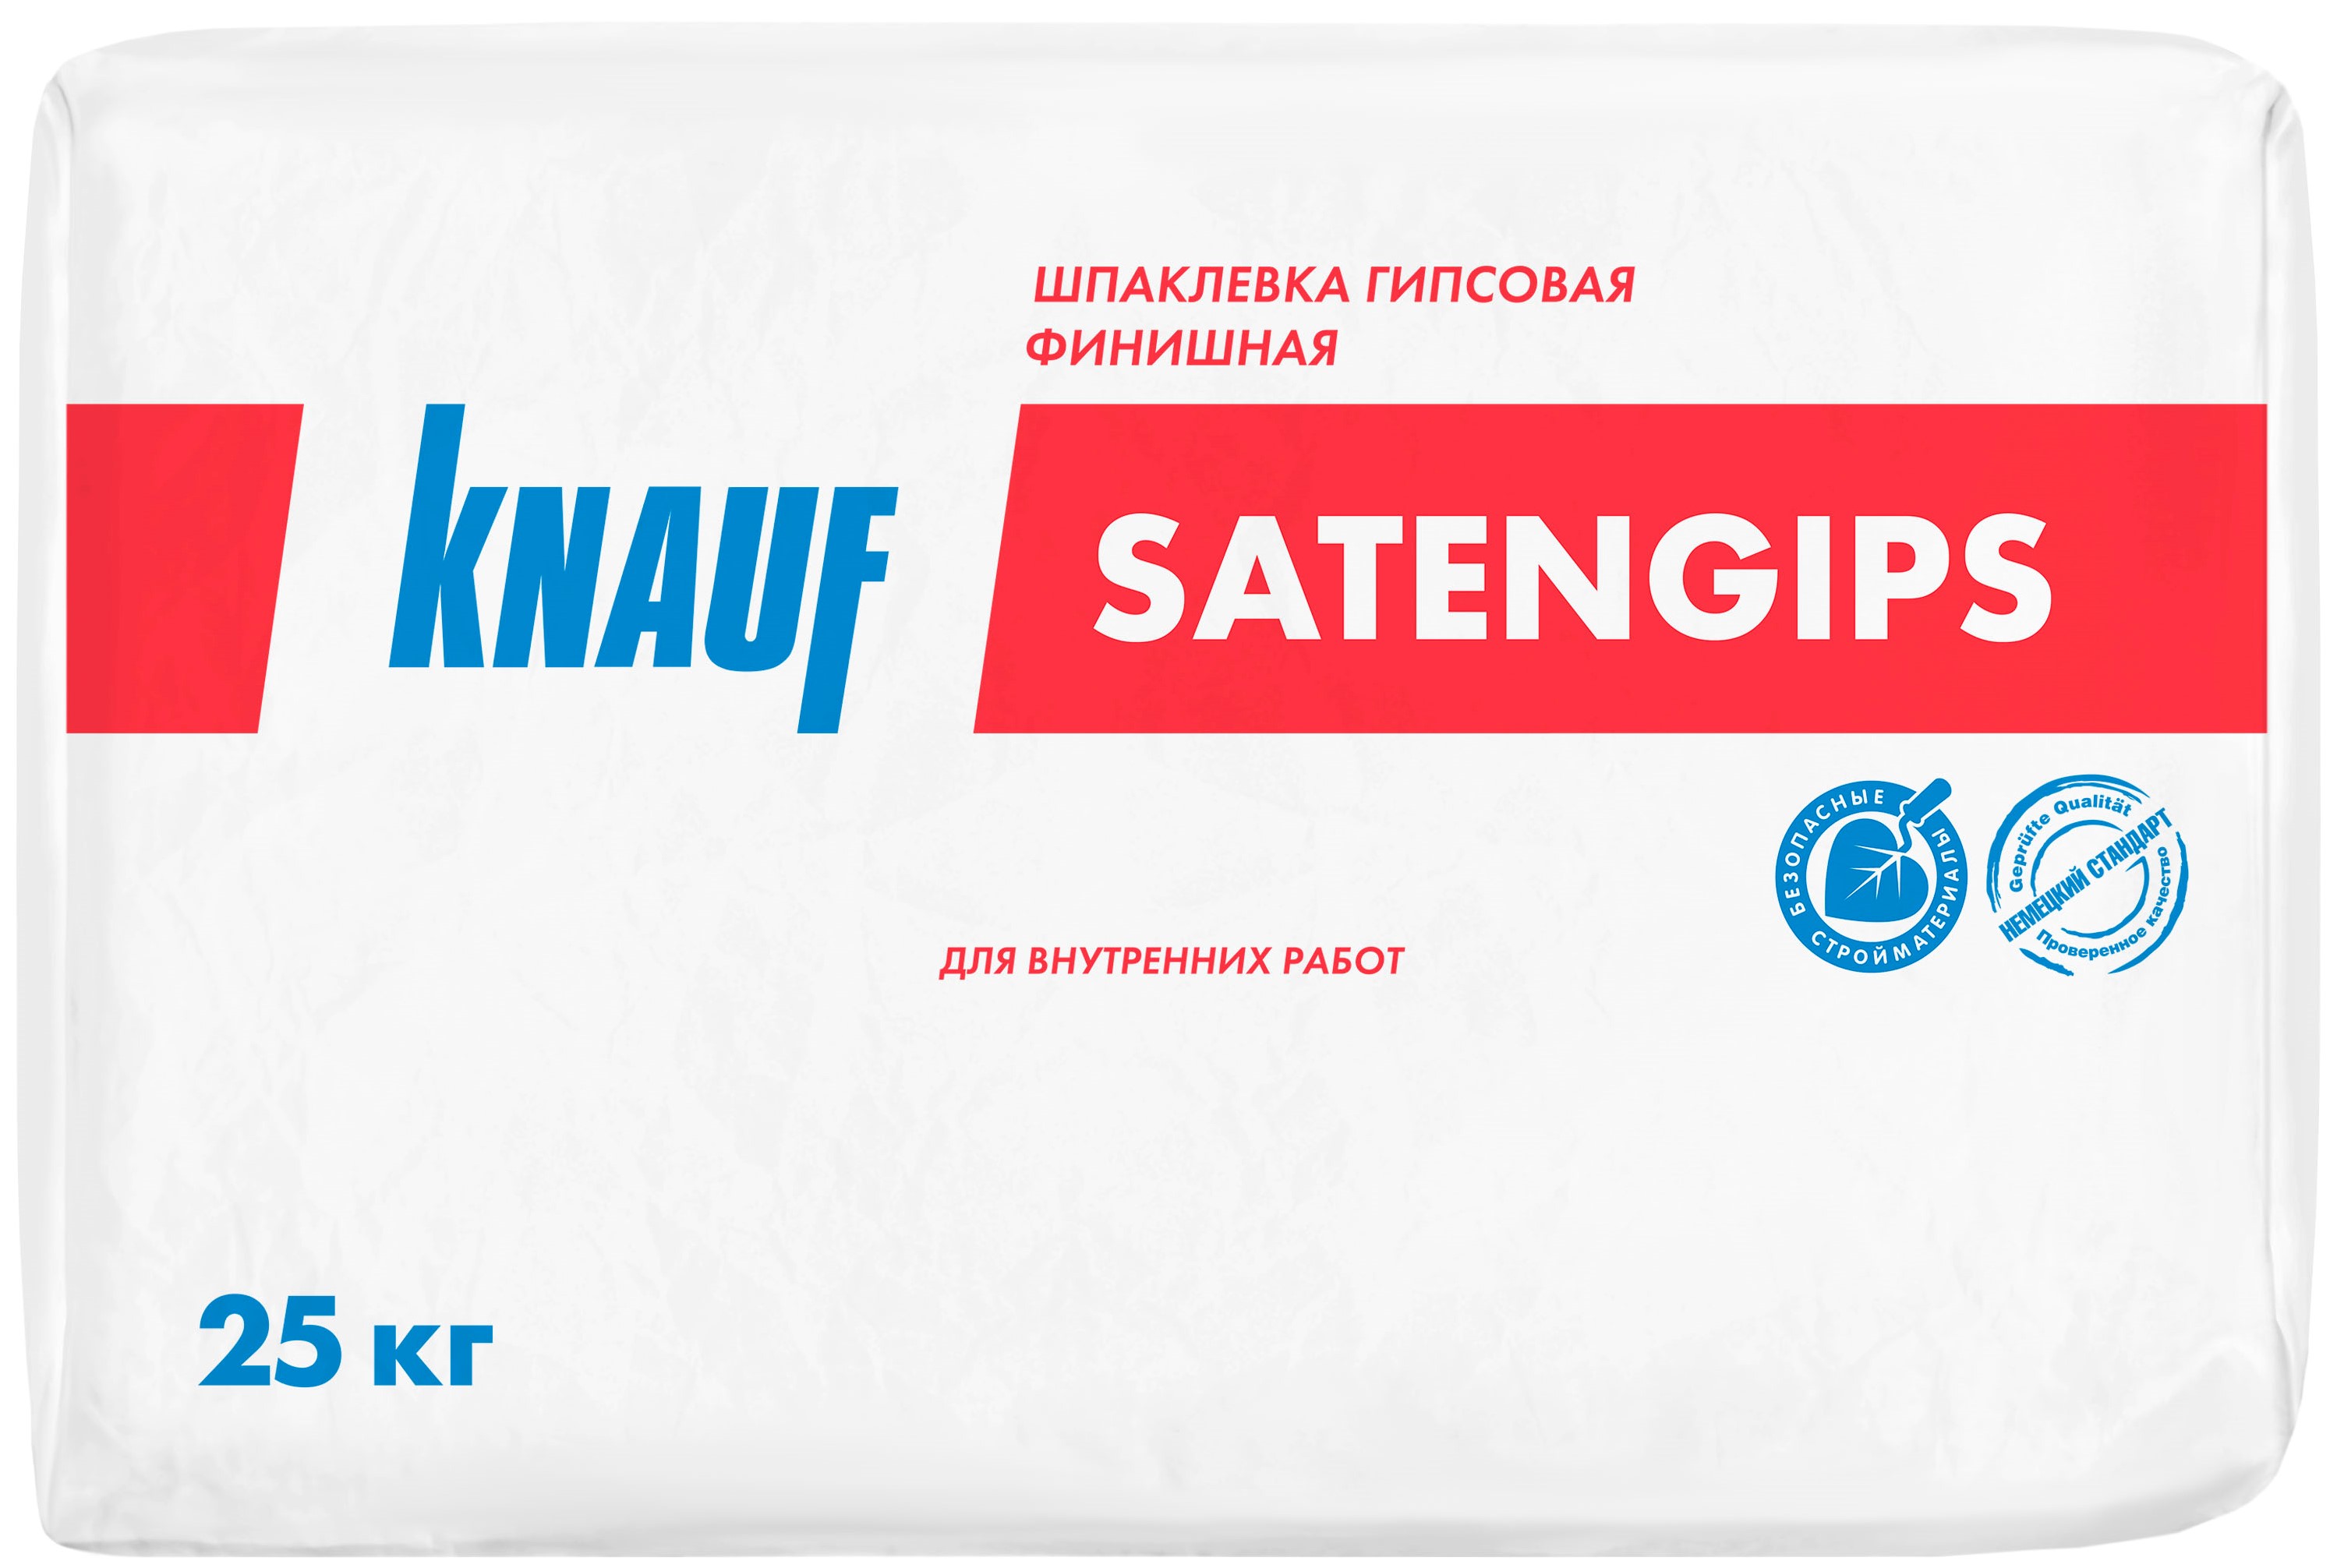 Knauf Сатенгипс 25 кг, Шпатлевка гипсовая финишная (серая)